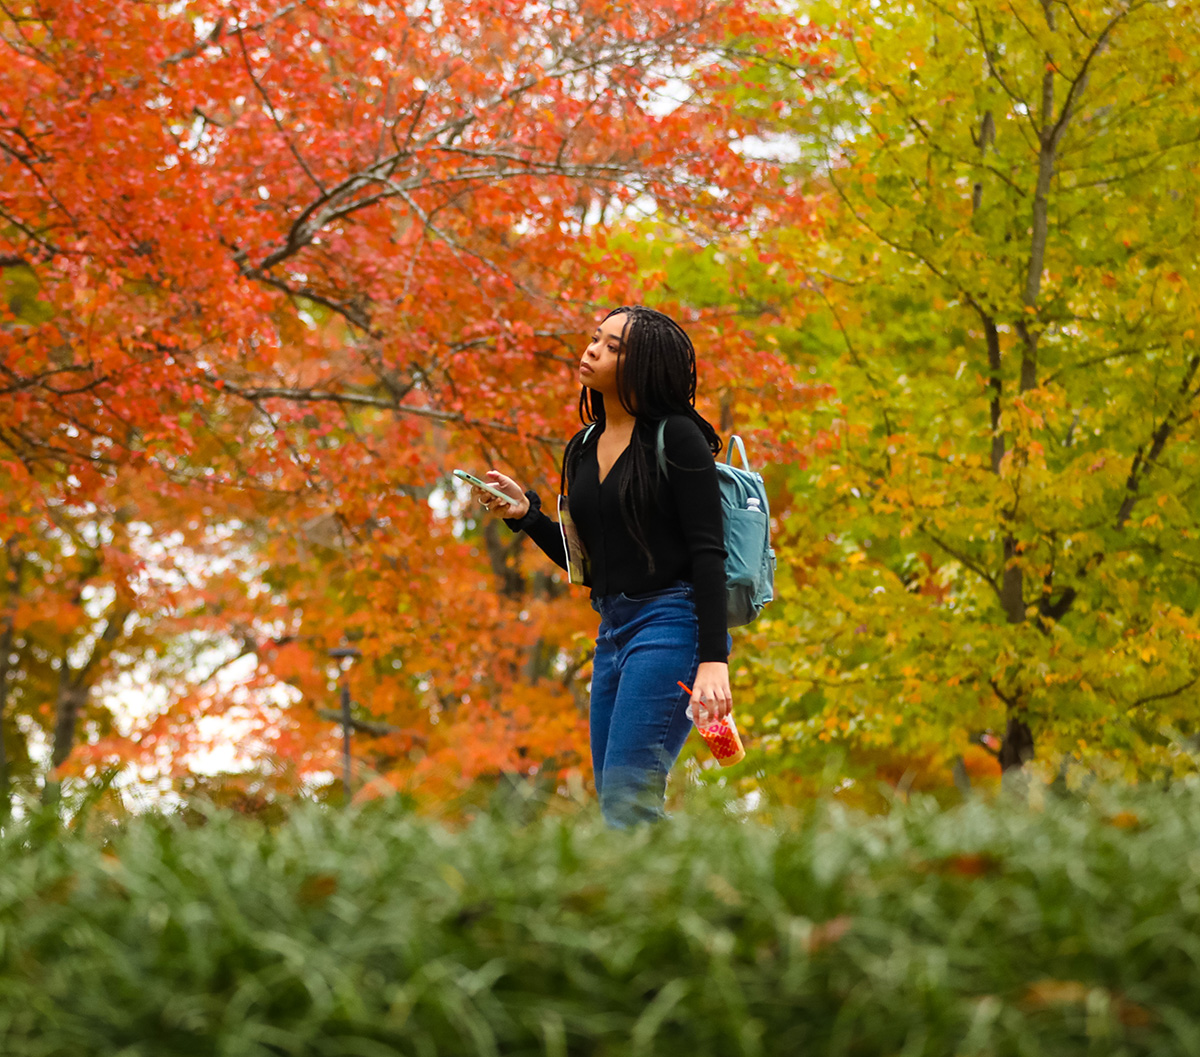 ksu student walking through wood during fall